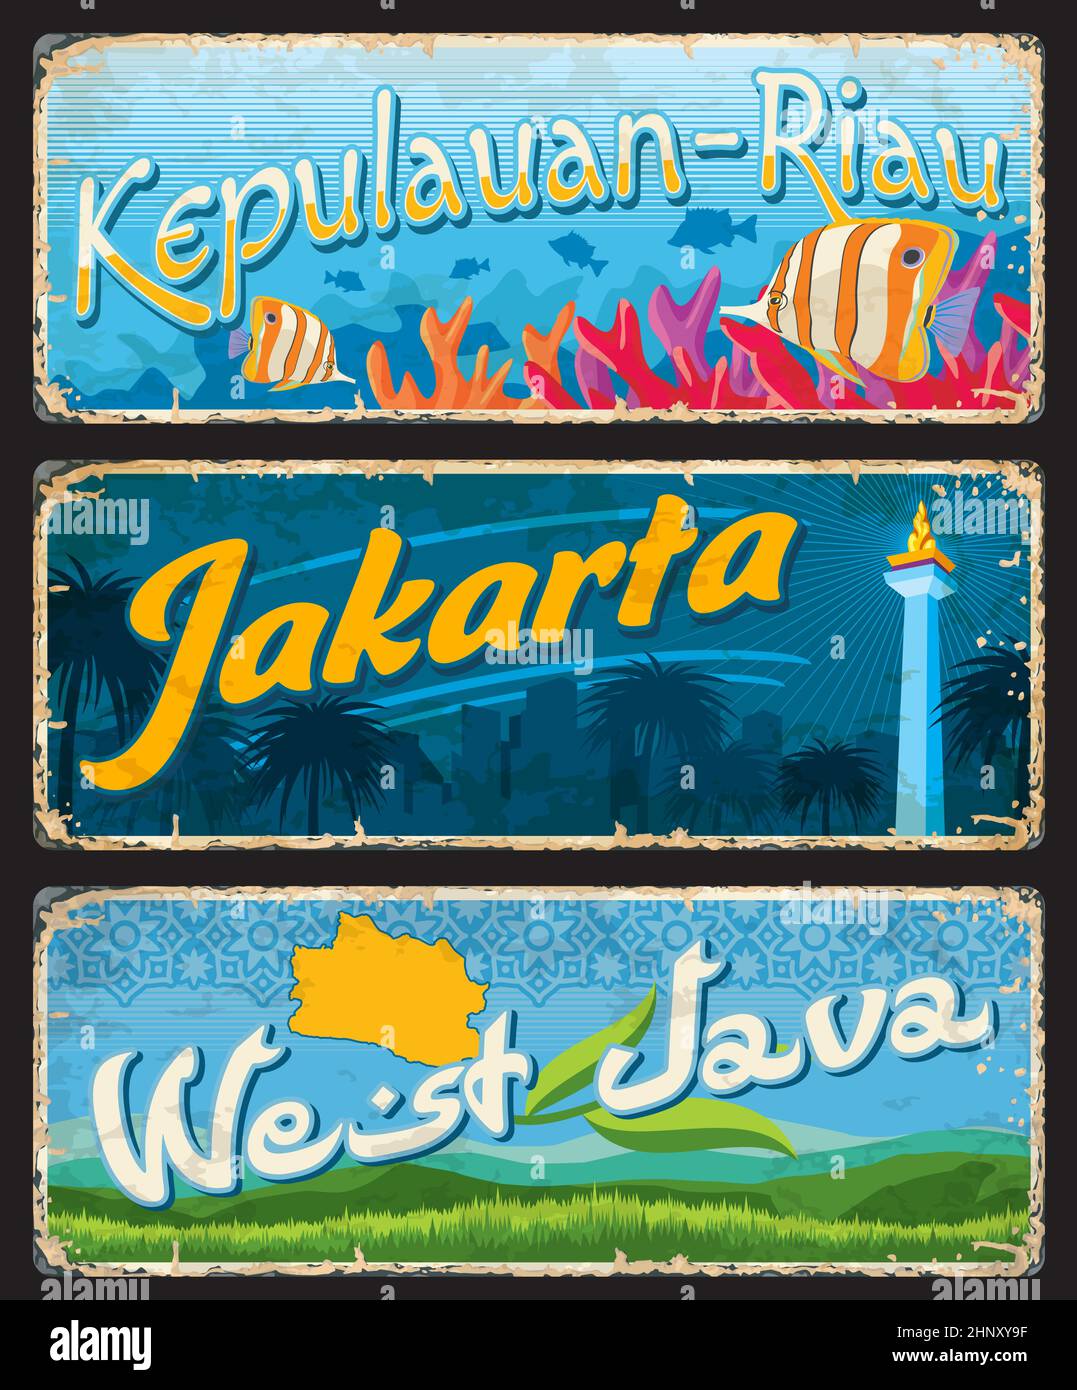 West Java, Jakarta et Kepulauan-Riau plaques et autocollants de voyage indonésiens. Indonésie province grunge bannières, carte-souvenir de voyage asiatique ou vecteur Illustration de Vecteur